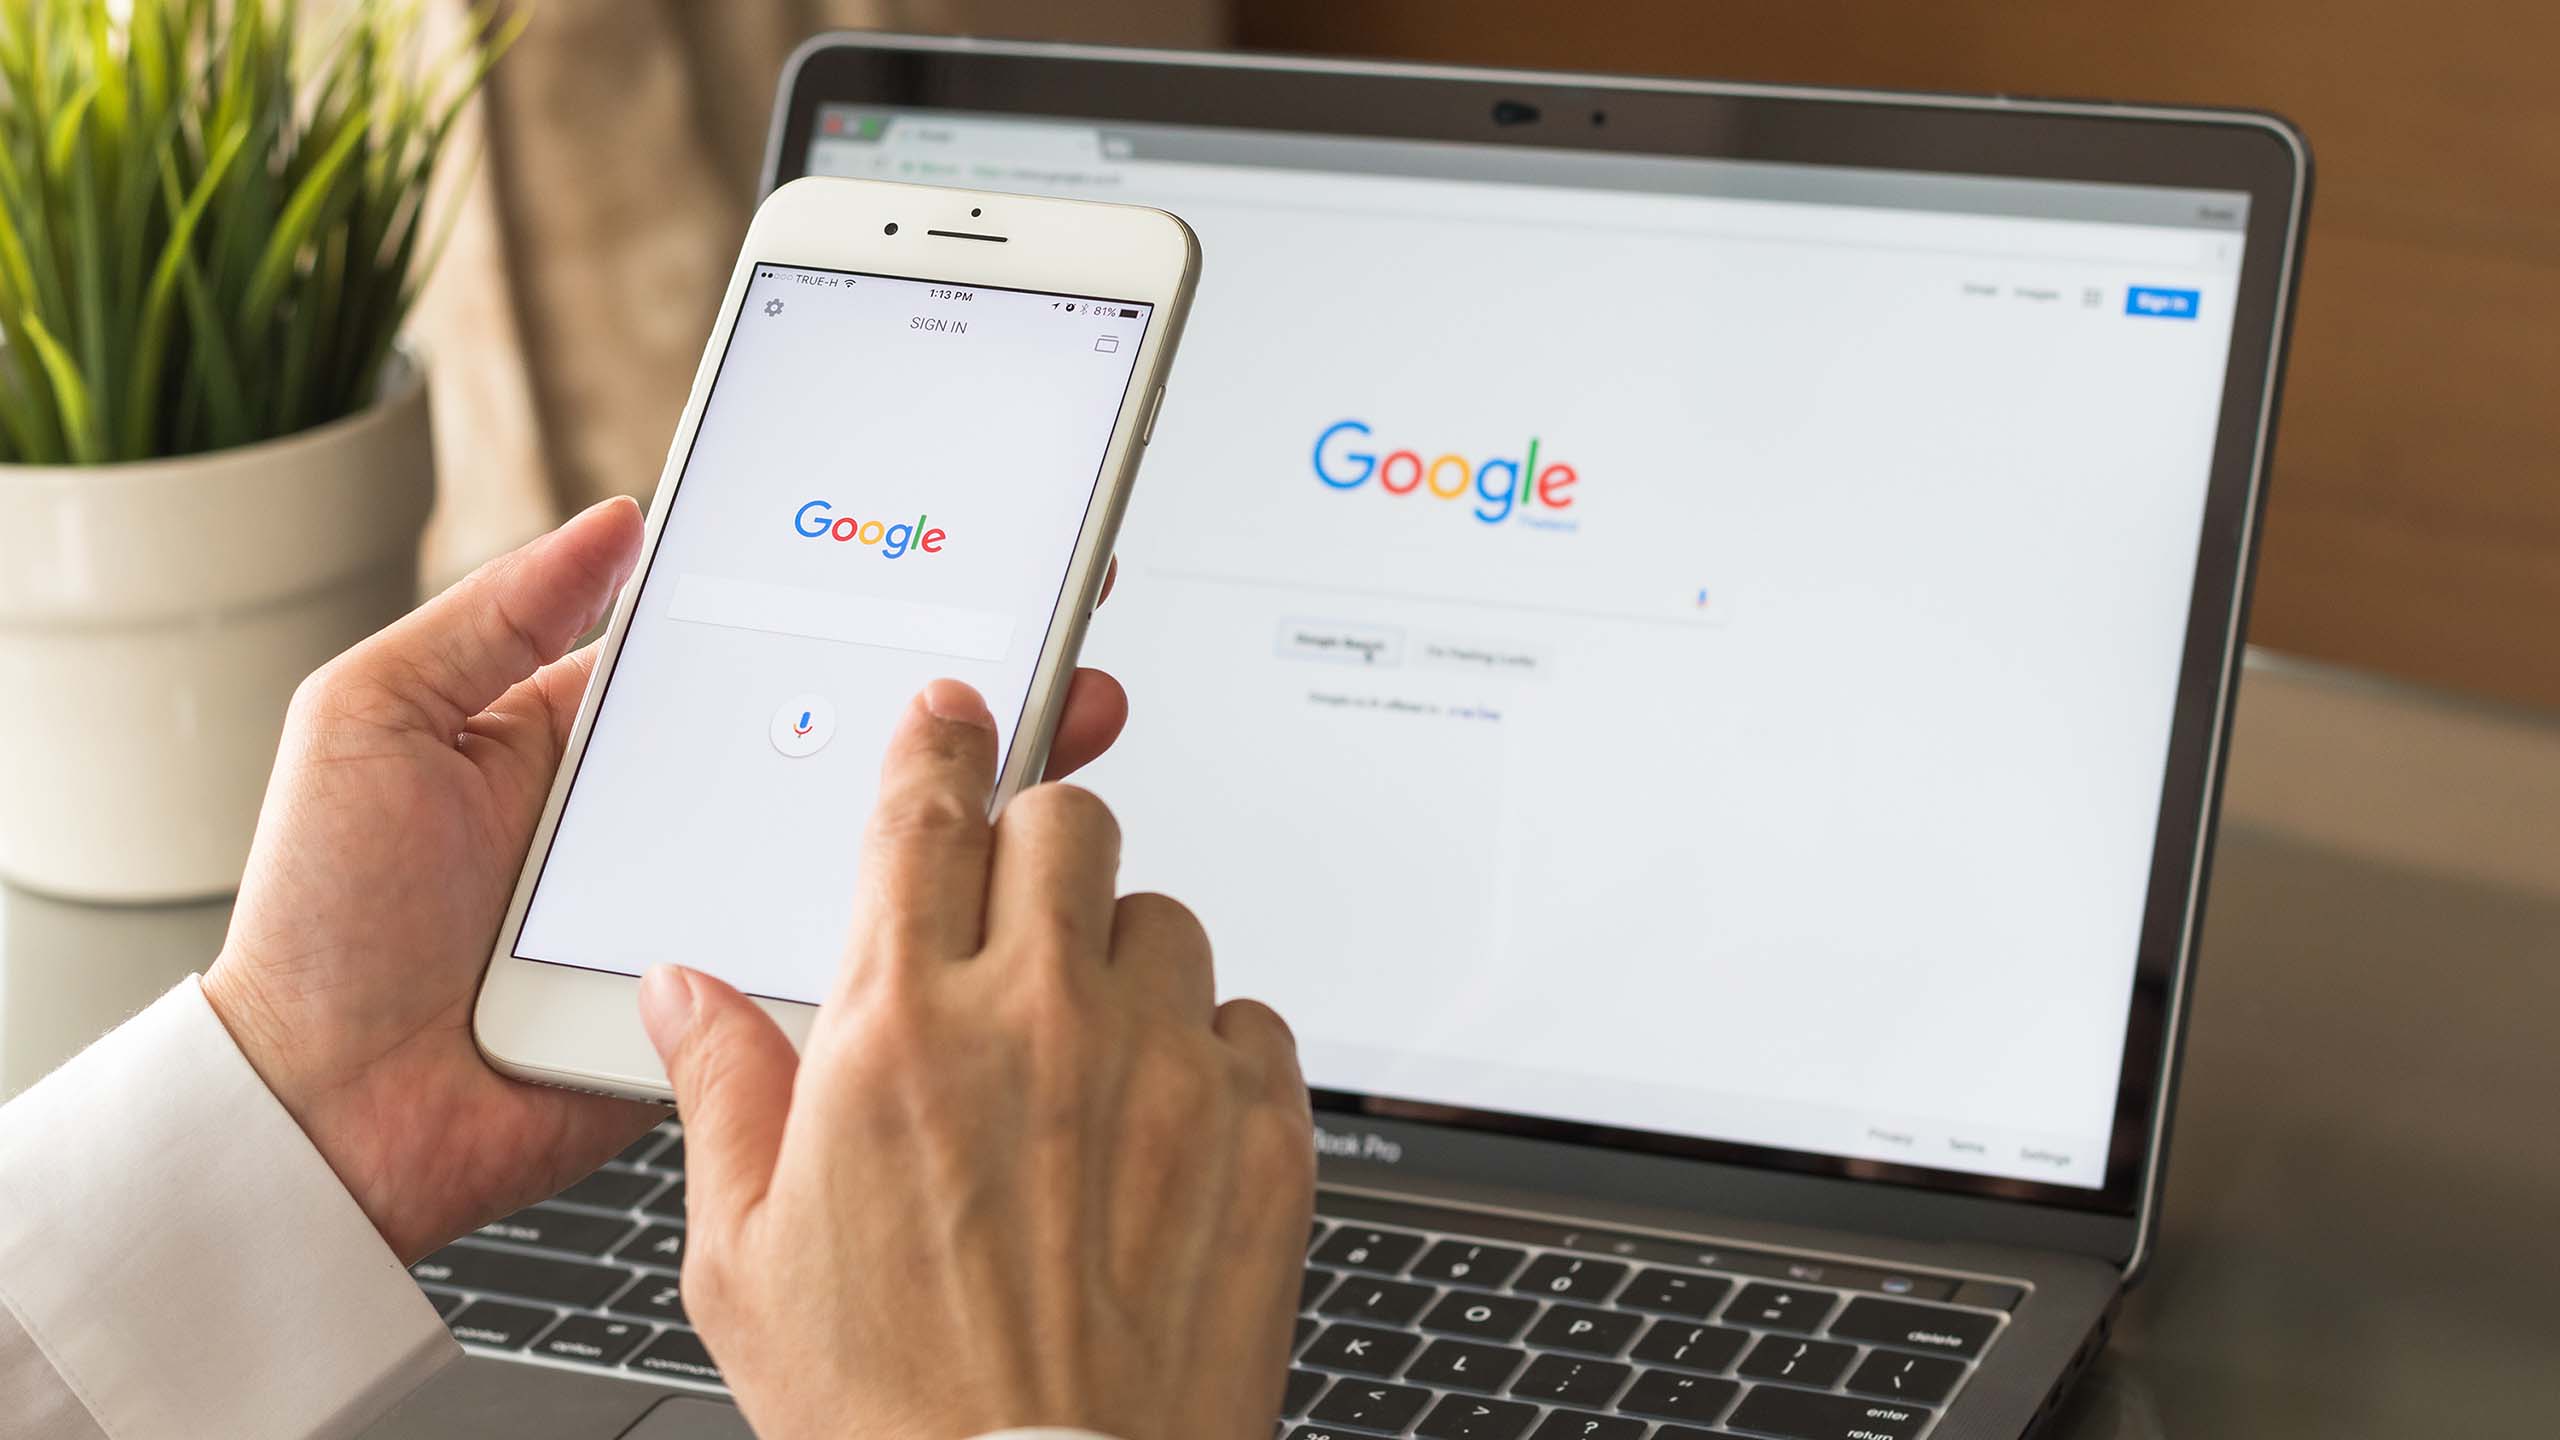 Sökmotorn Googles förstasida för sökning på en mobiltelefon och på en laptop